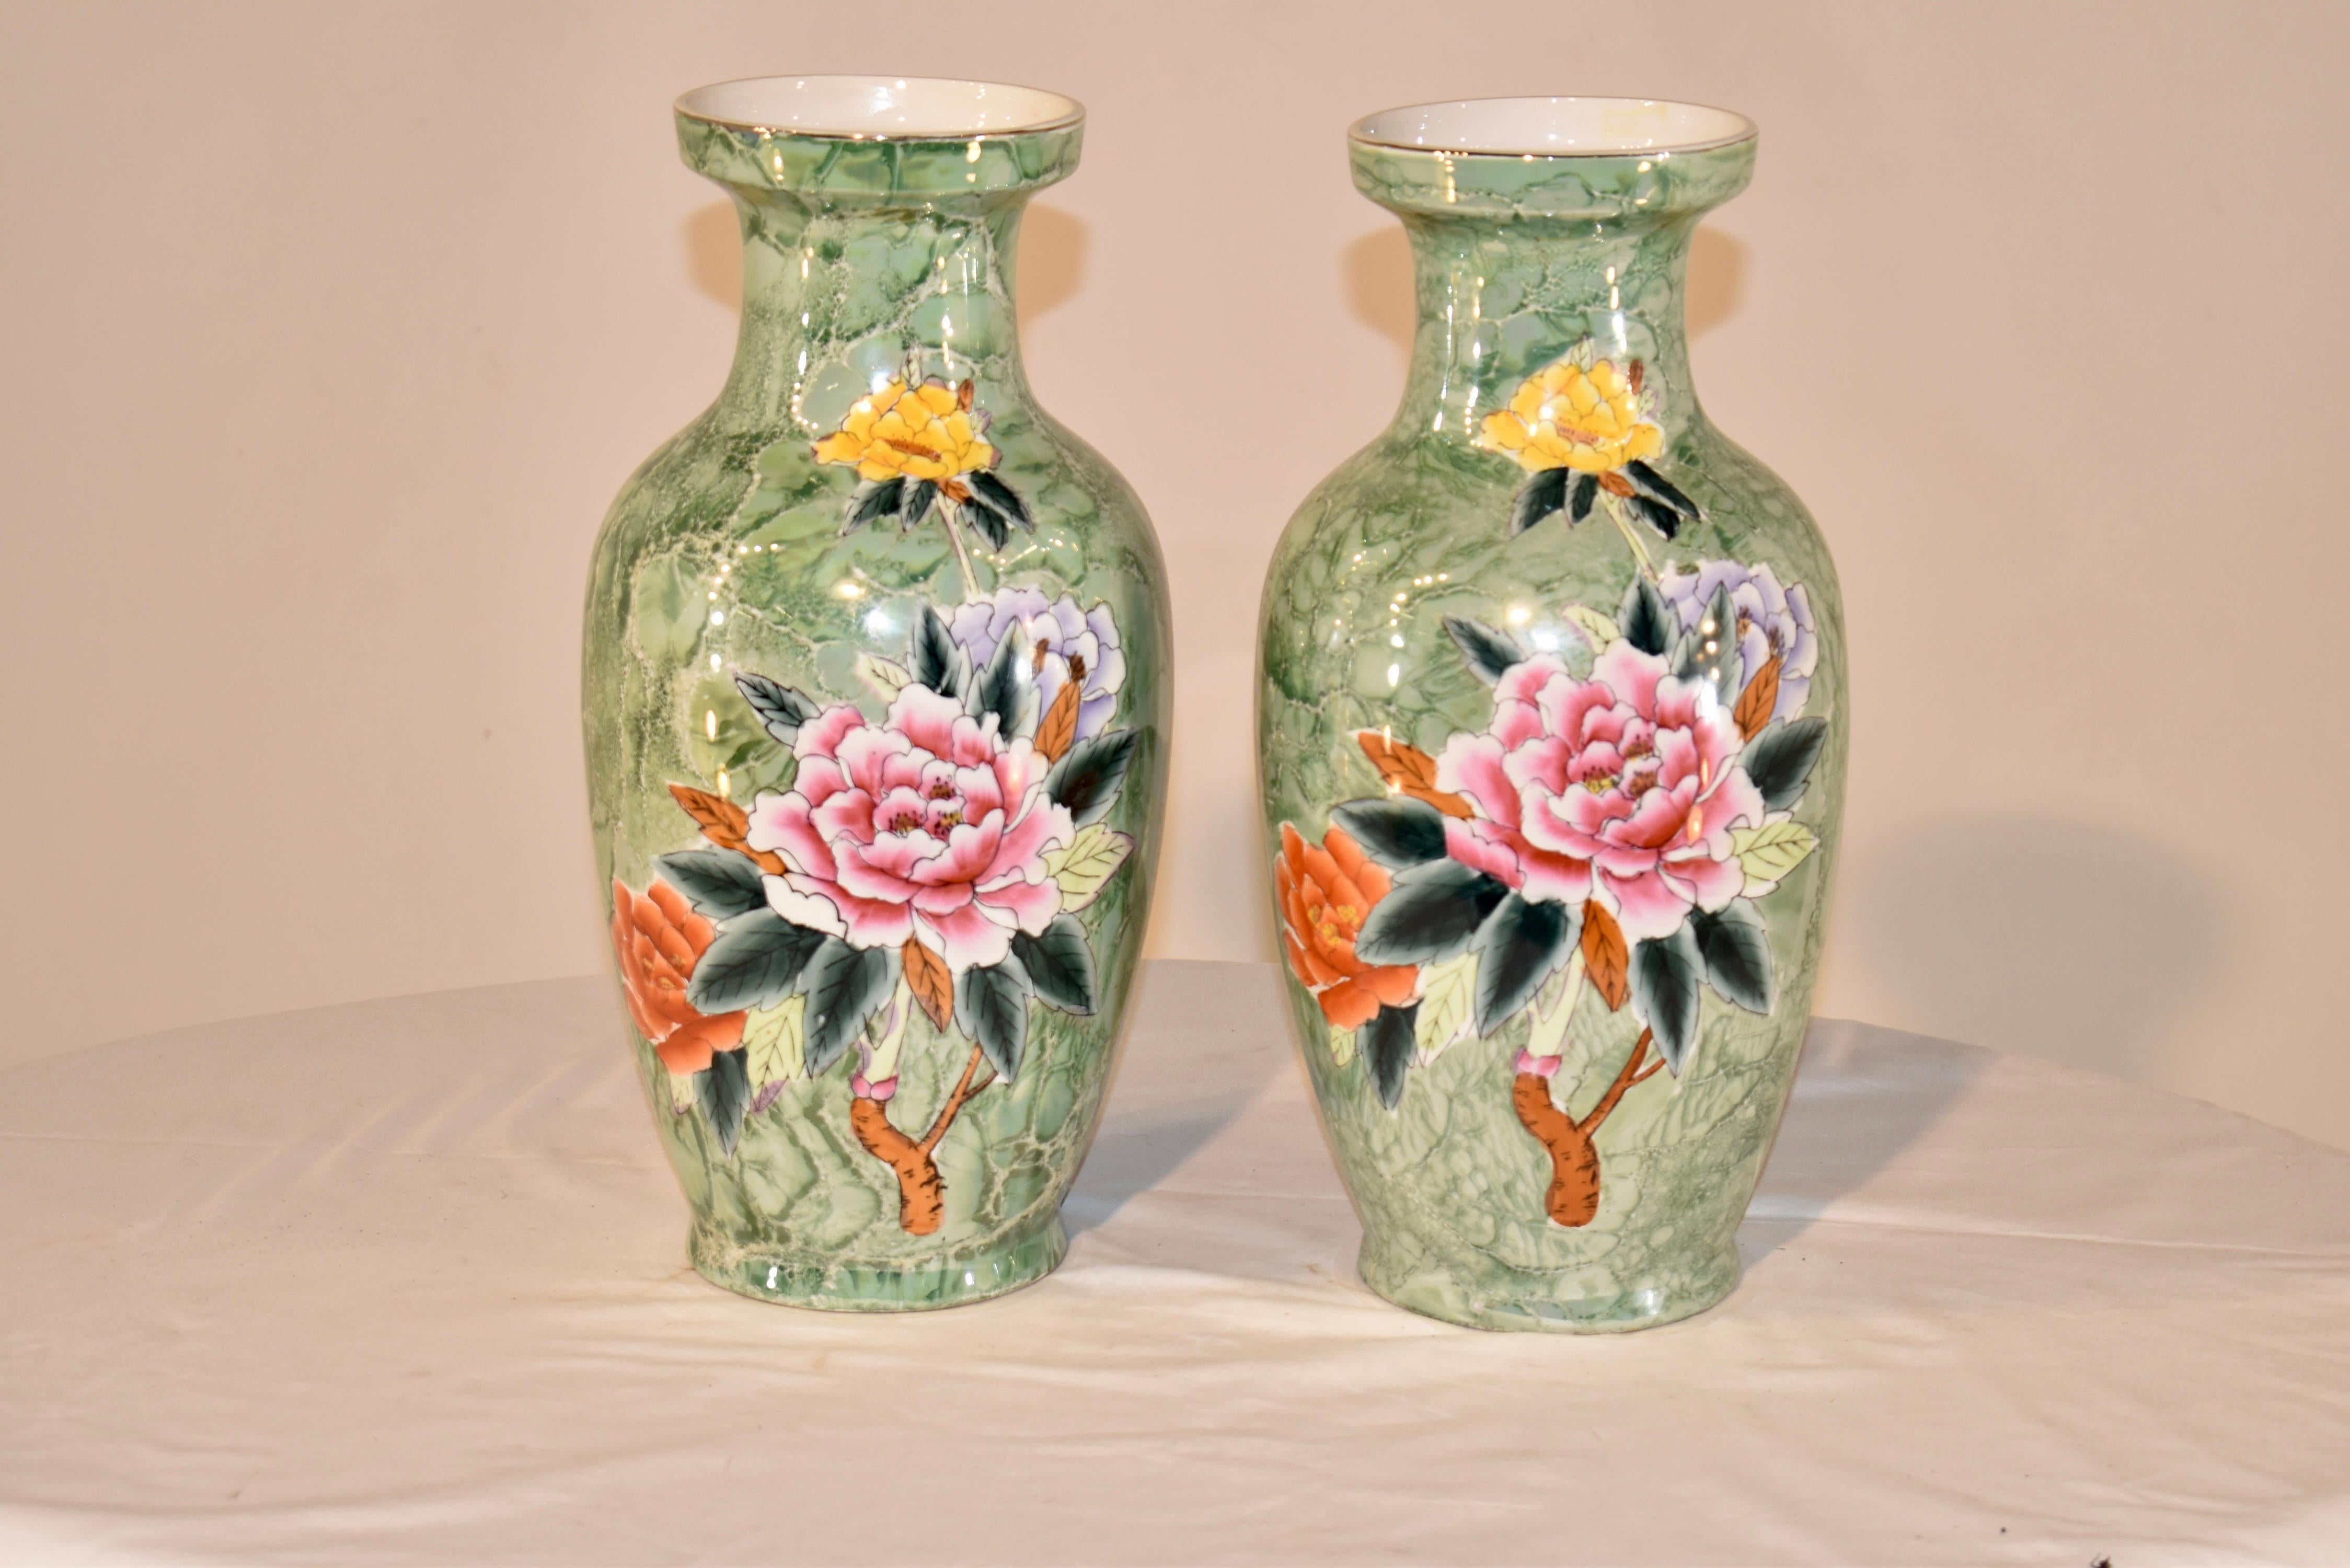 Paire de grands vases inhabituels en céramique avec une forme et un style merveilleux.  La couleur de base est un vert chiné qui rappelle le marbre, et est peint à la main avec des décorations florales.  Ils sont magnifiques,  et si différent de